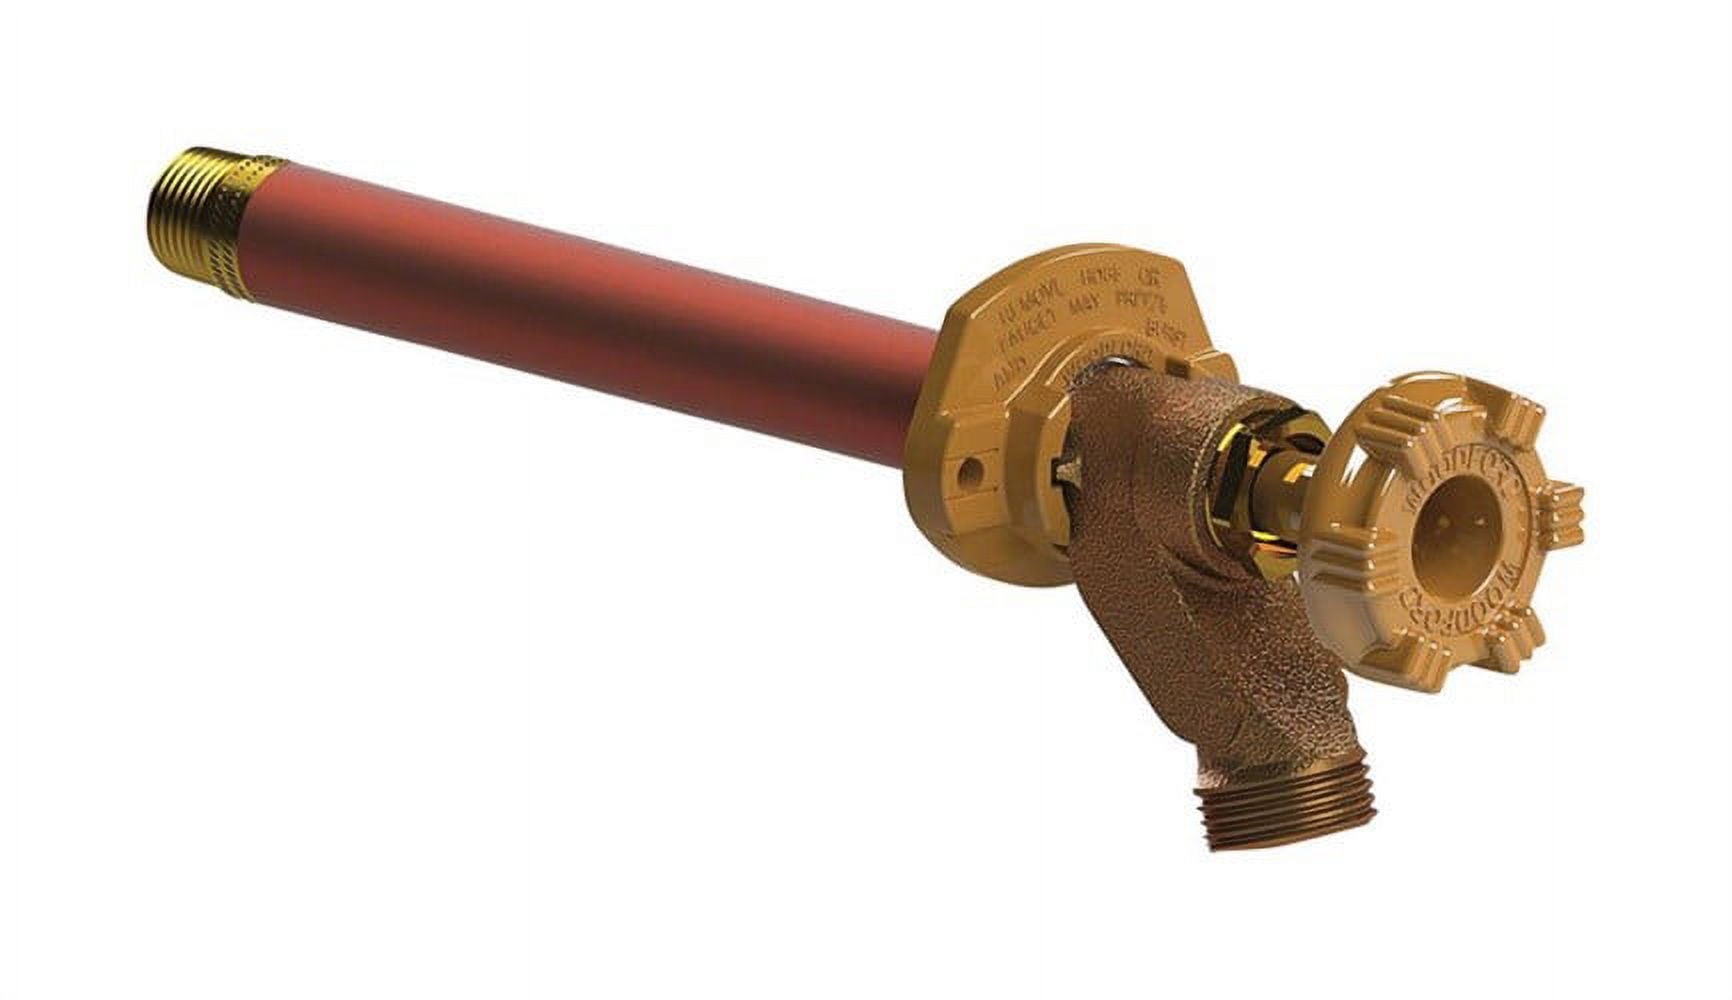 Woodford Brown Repair Kit for Faucet - Genuine Metal Wheel Handle